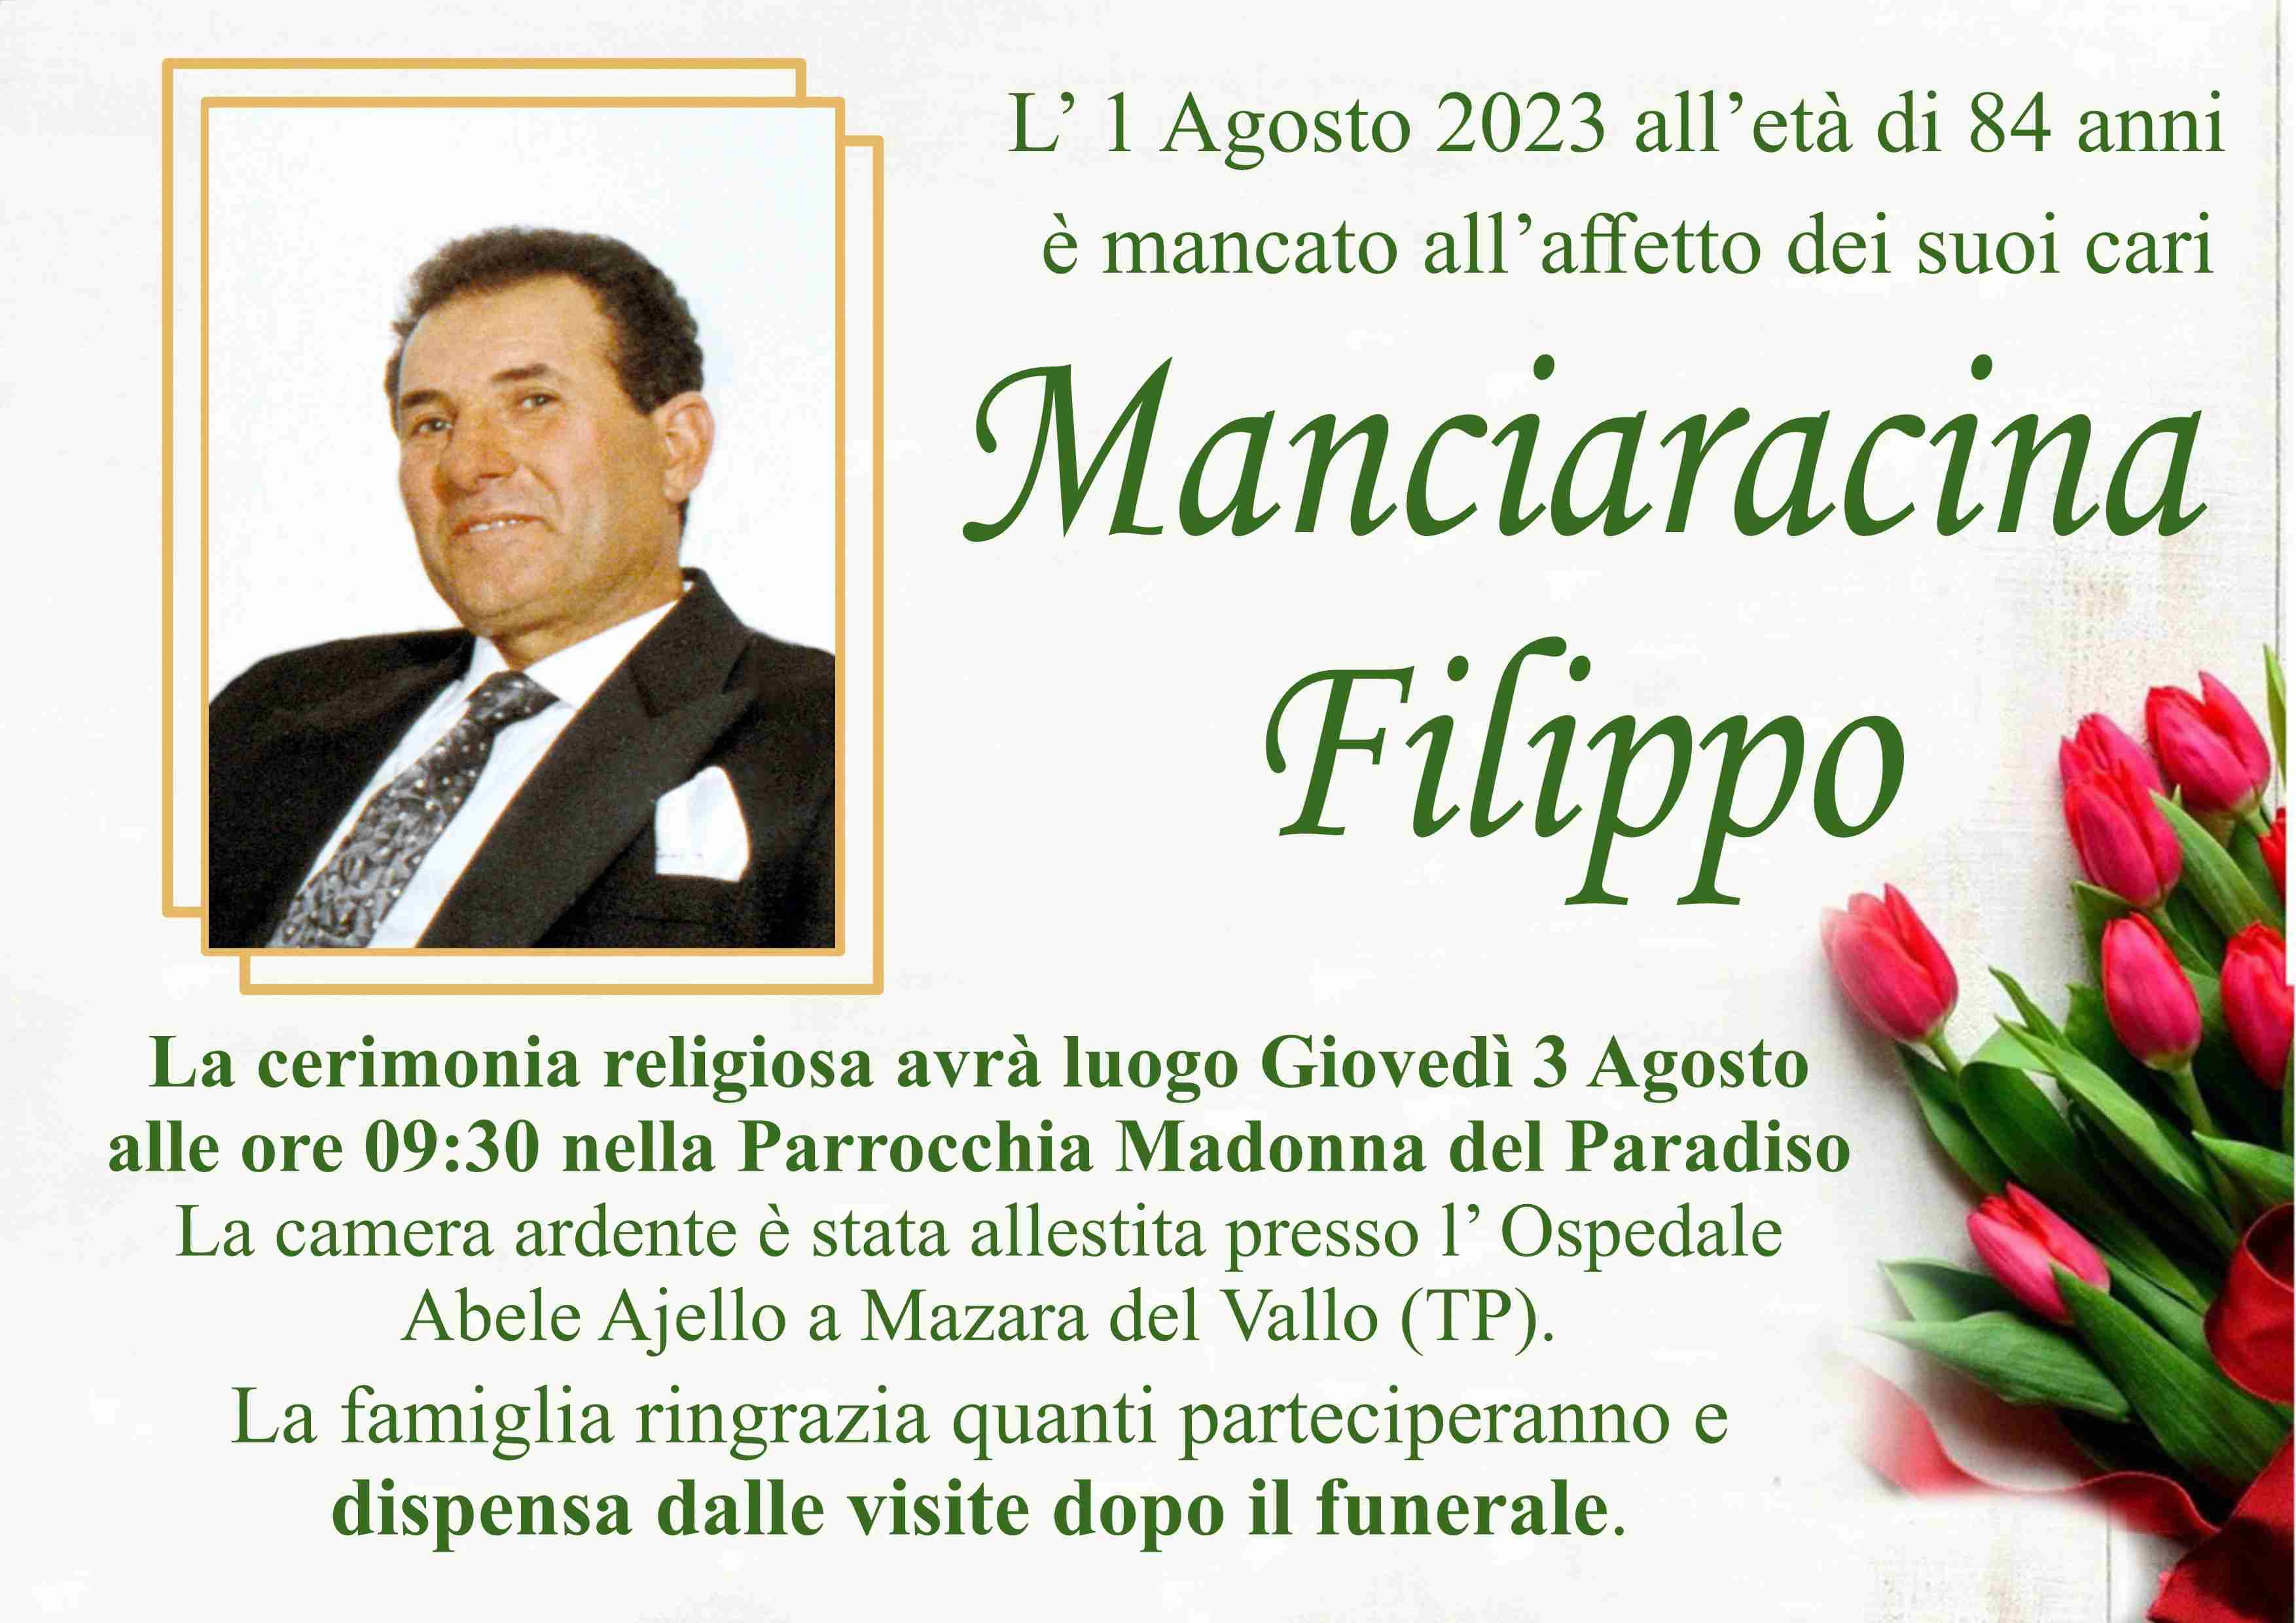 Filippo Manciaracina